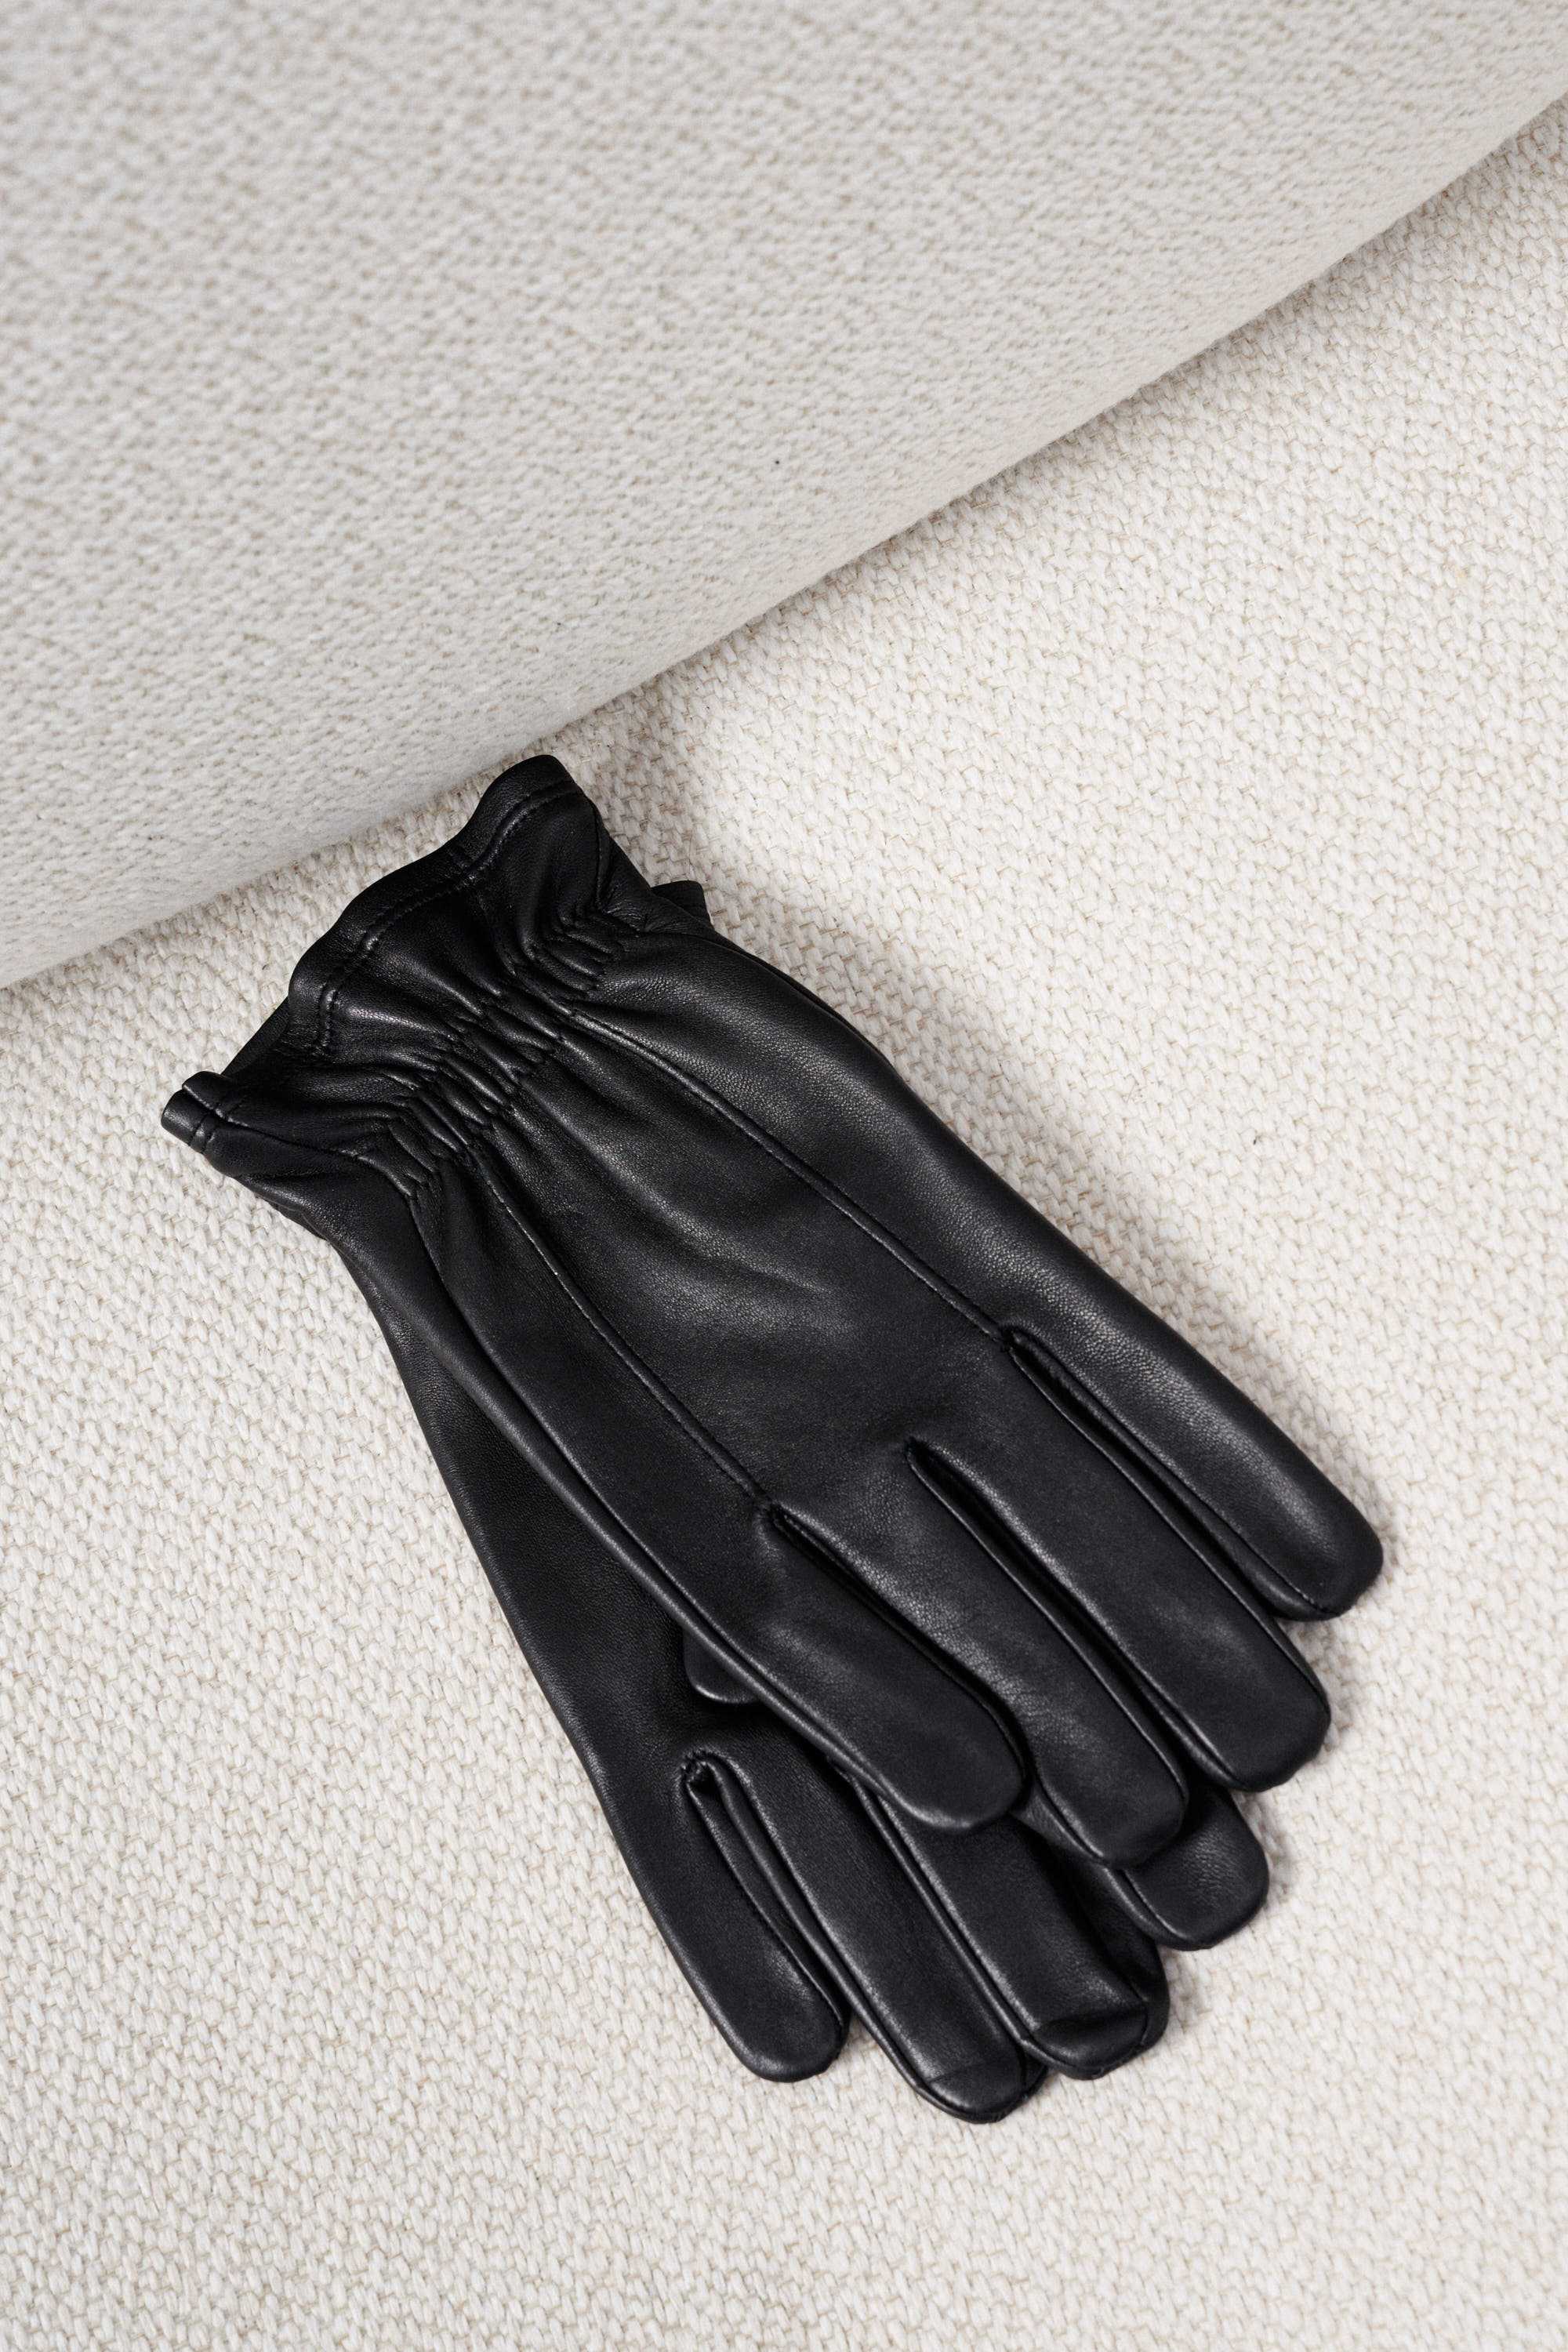 Перчатки мужские кожаные черные на резинке с двумя строчками